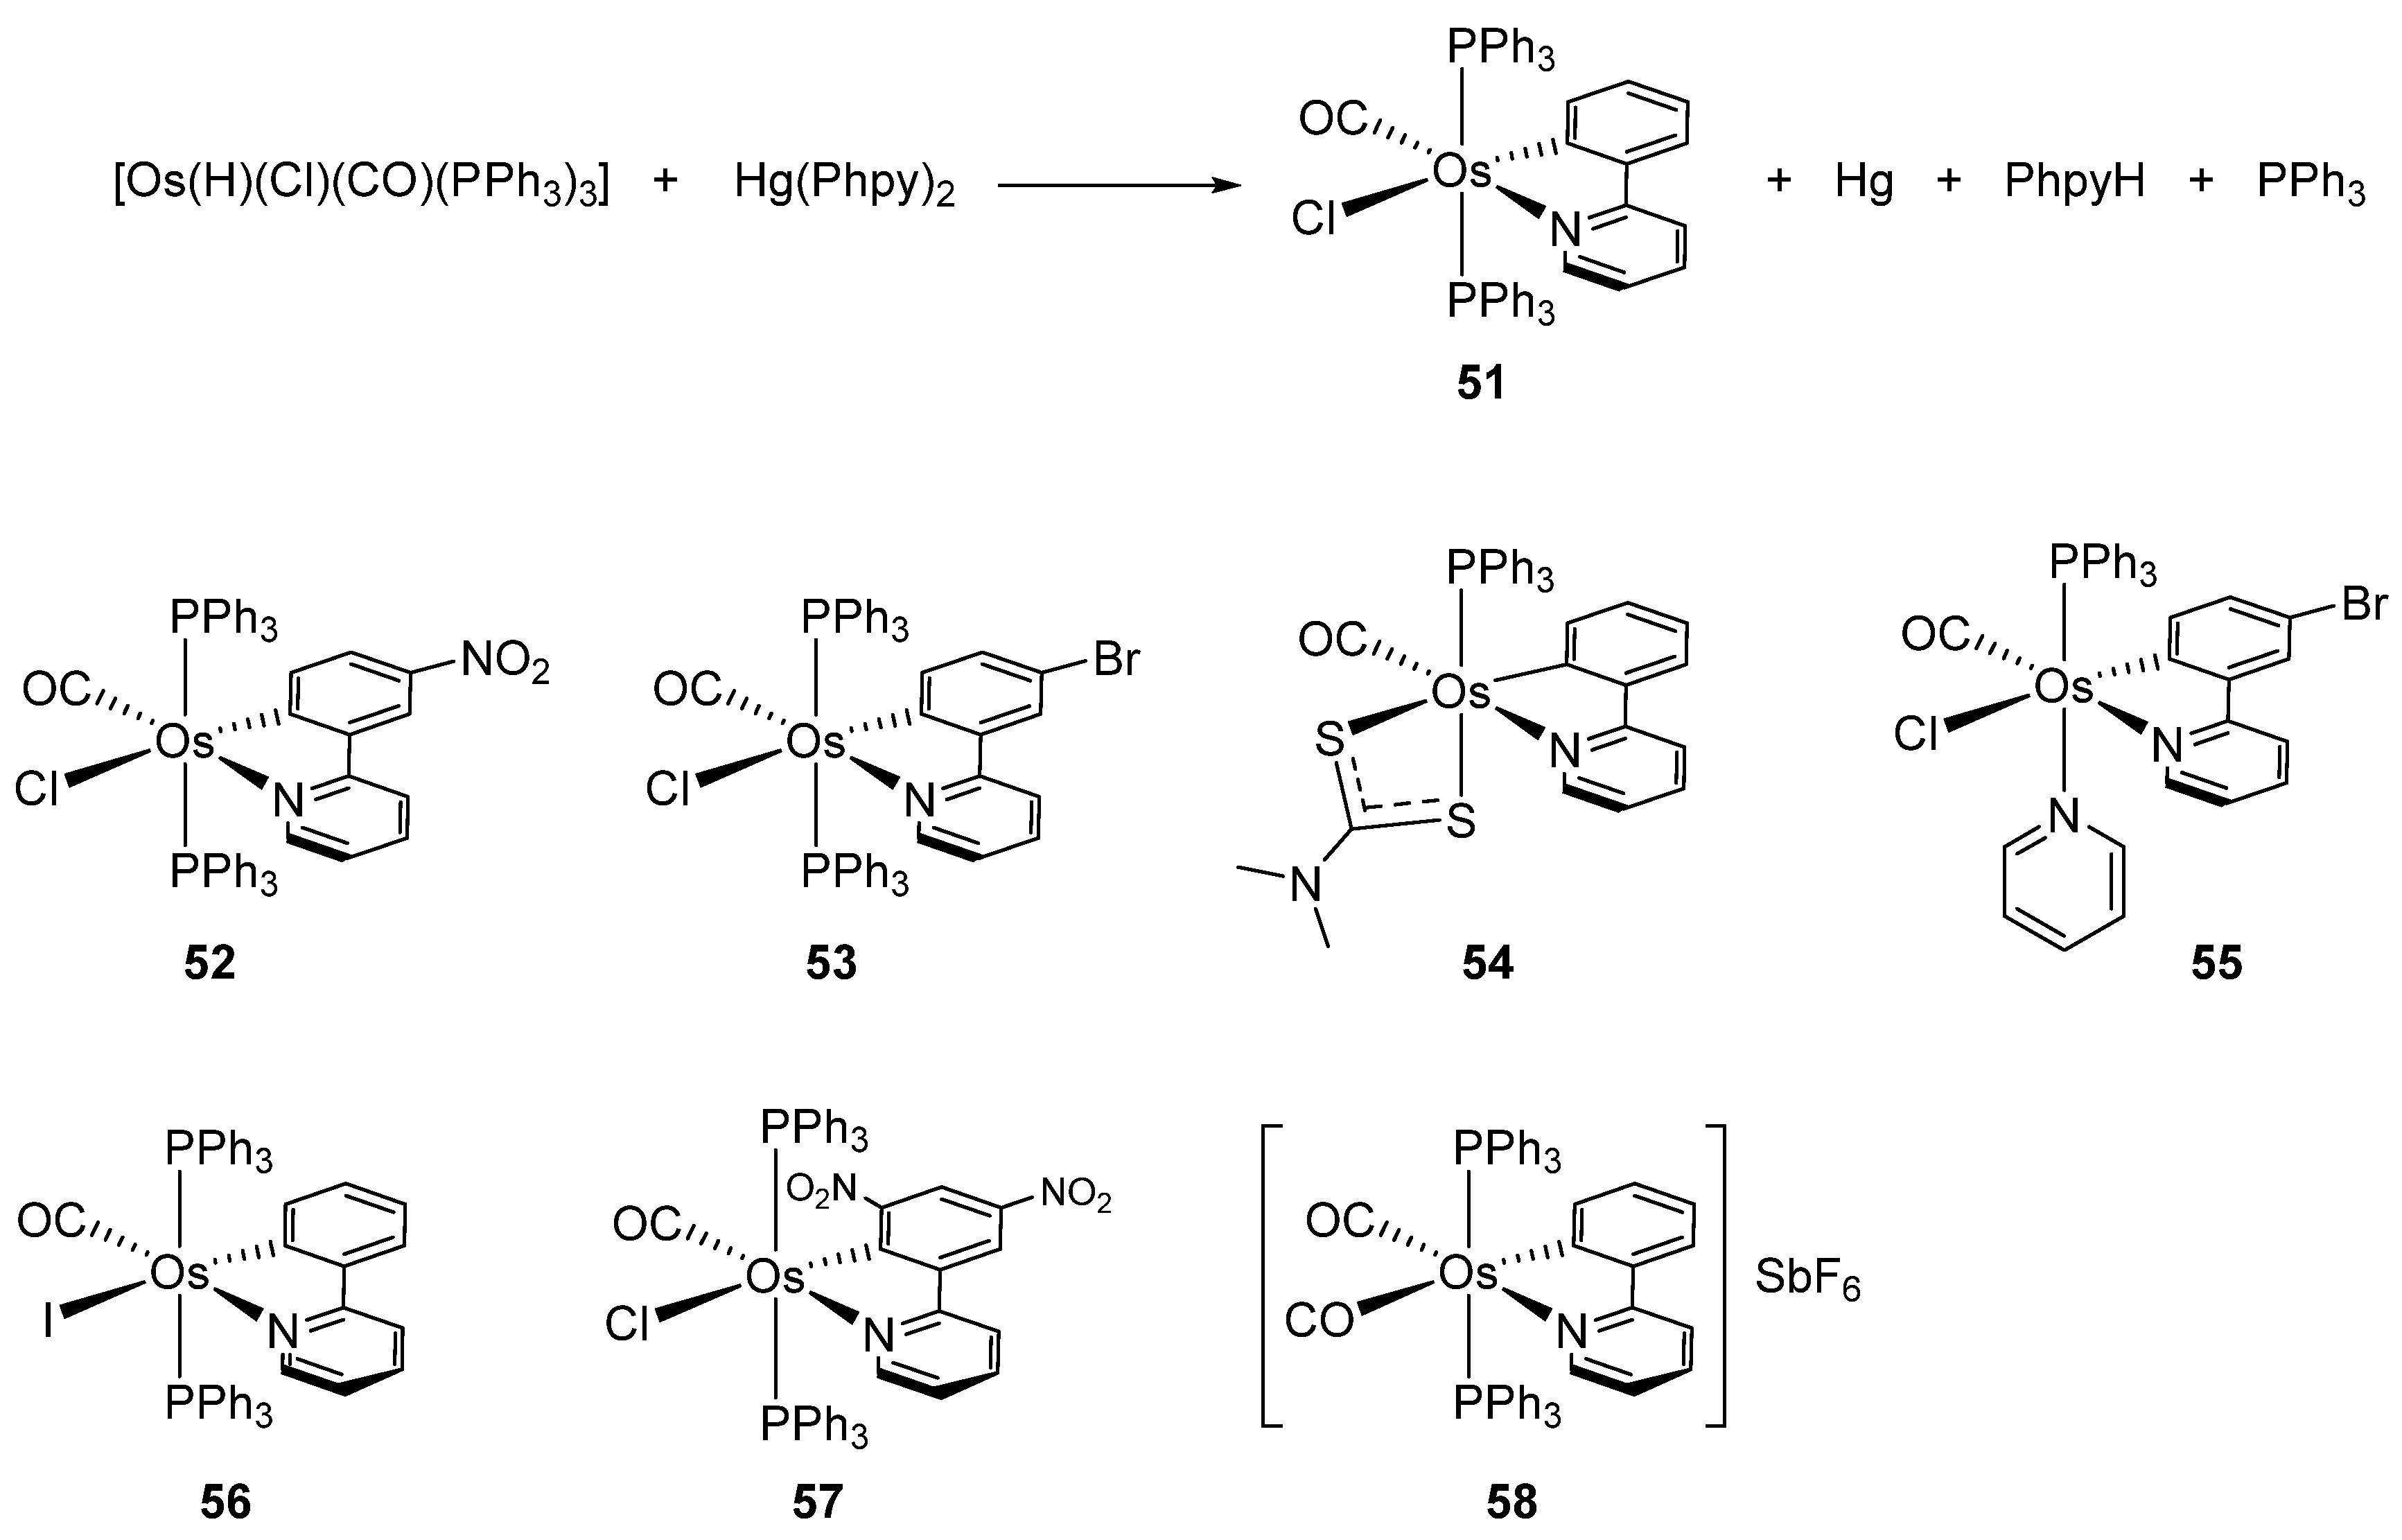 80 синтез. Полиоксиэтилен Синтез. Gjkbjrcb'nbkty CJH,byfn vjyjjktfn. Полиоксиэтилен, полиоксипропилен, алкилэфир. FEOOH properties Synthesis.